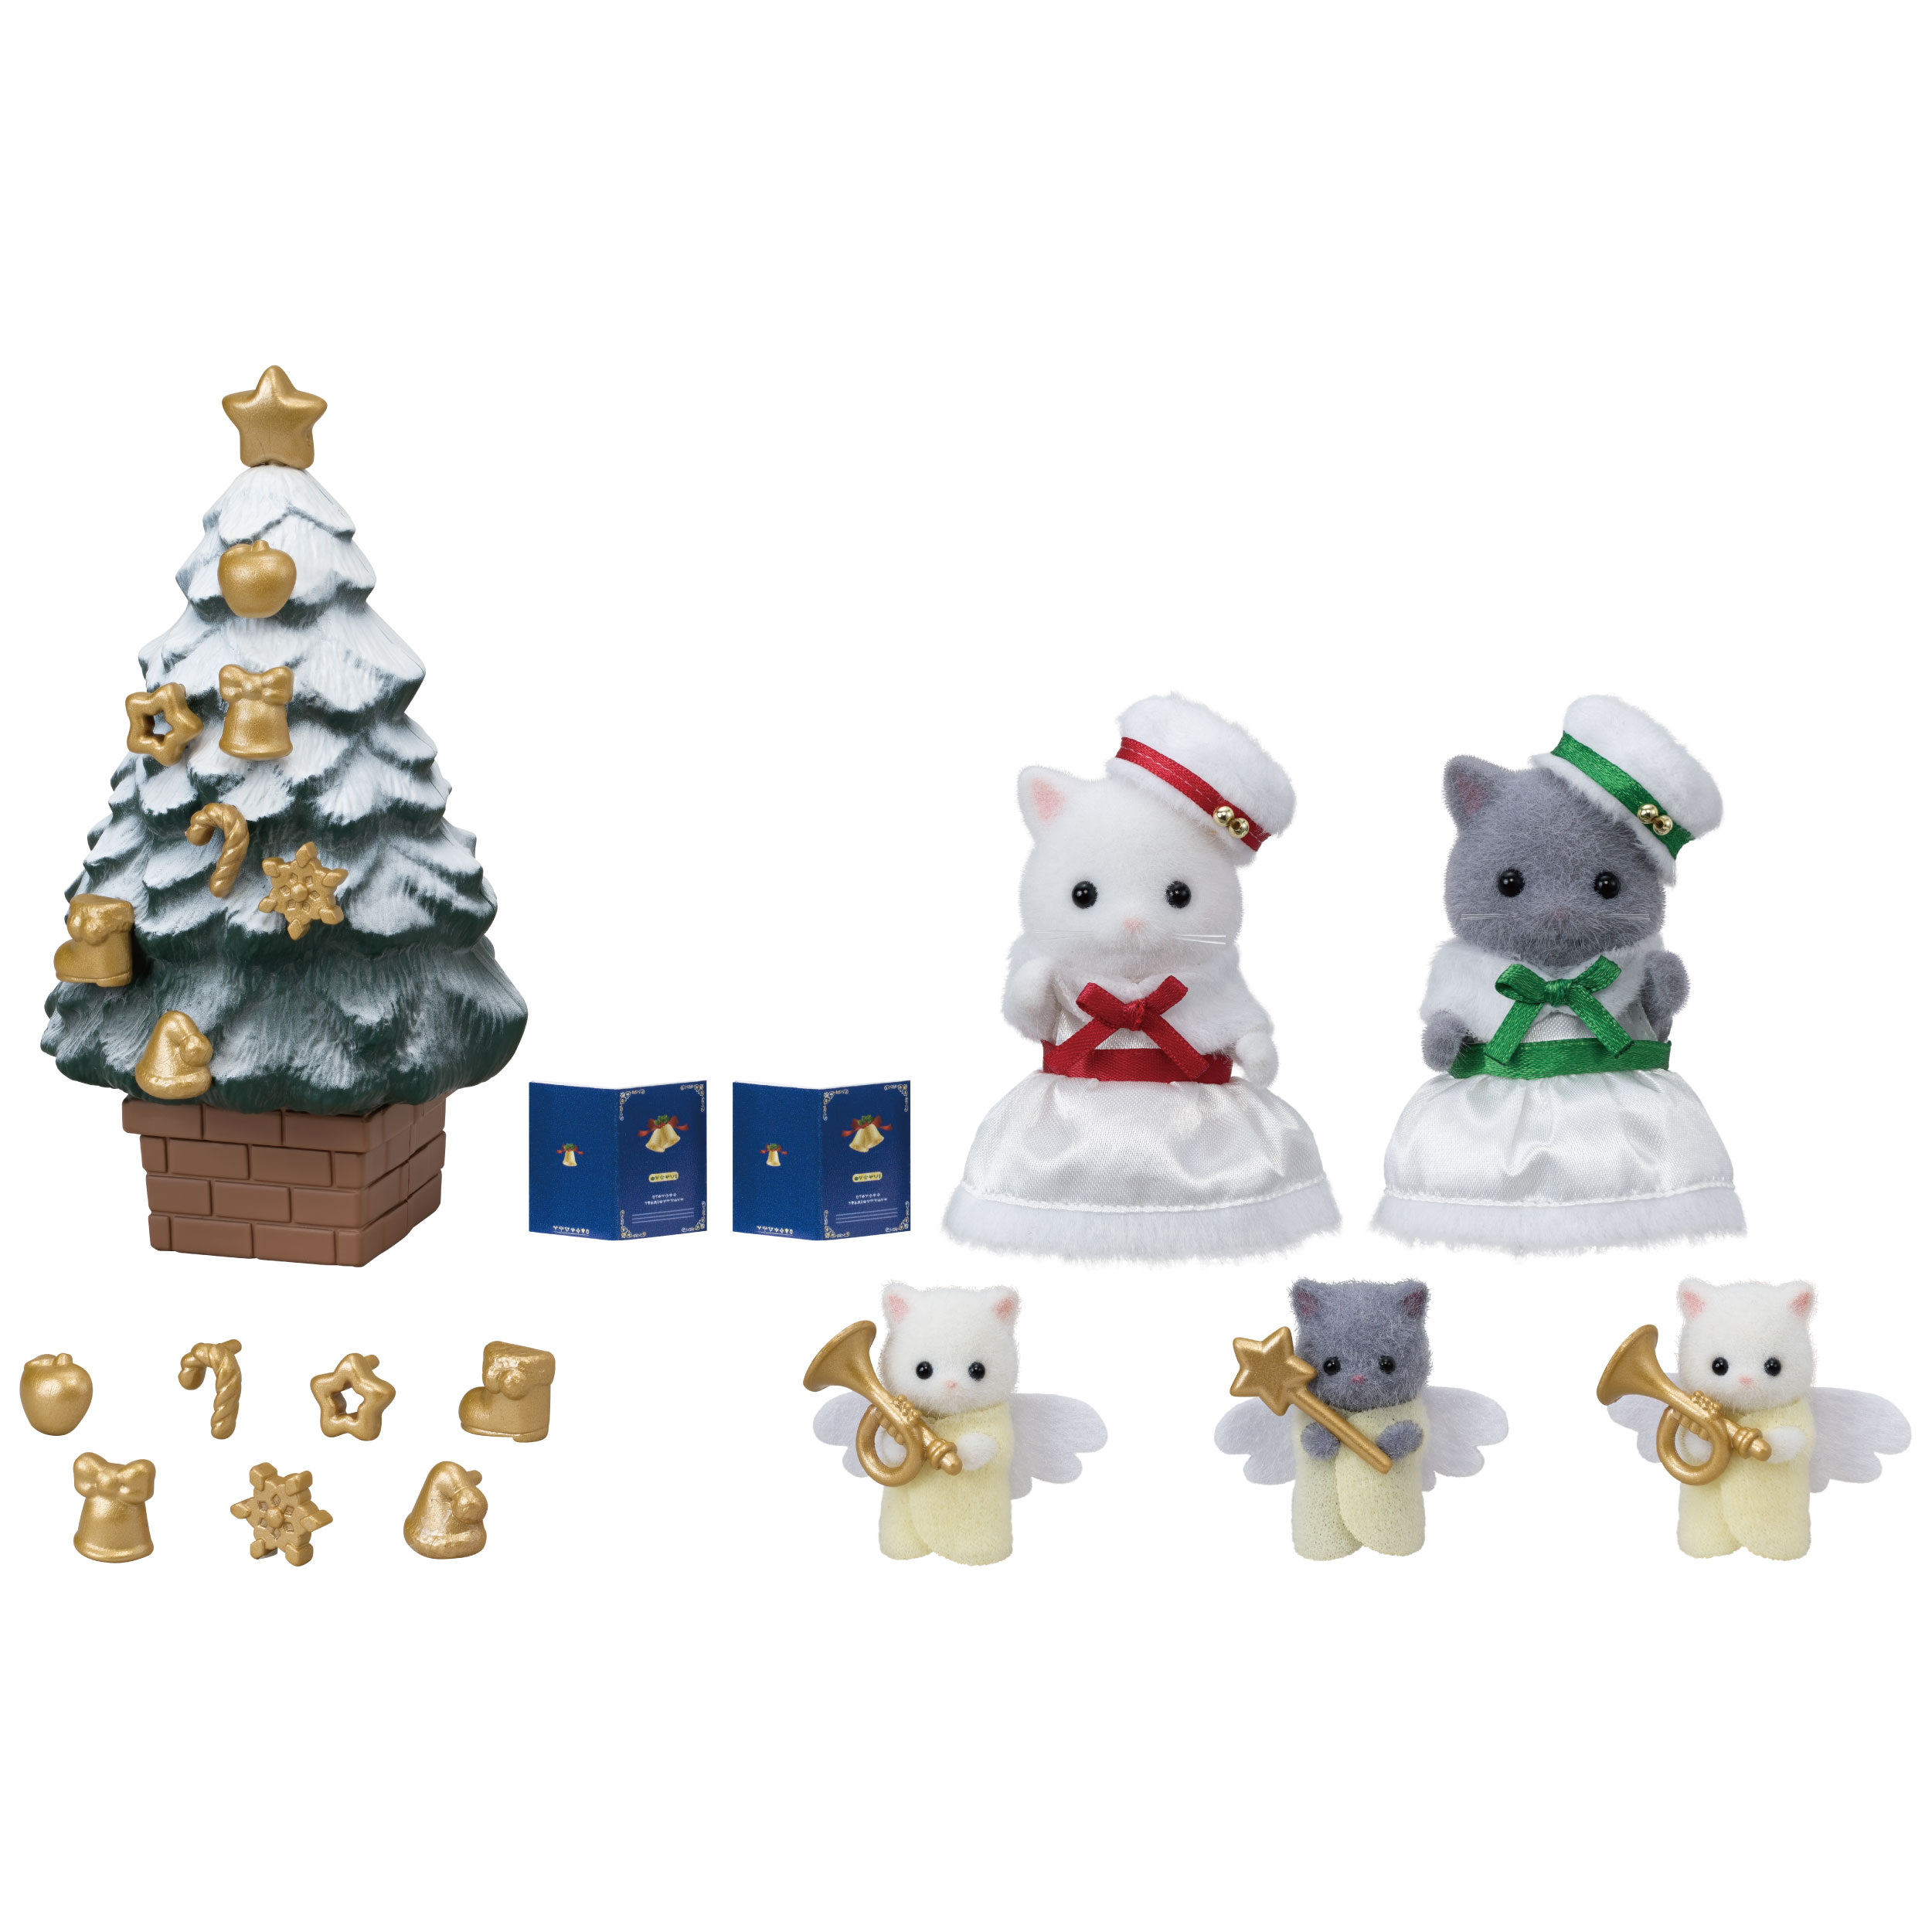 ホワイトクリスマスセット 家具と人形セット シルバニアファミリーオンラインショップ